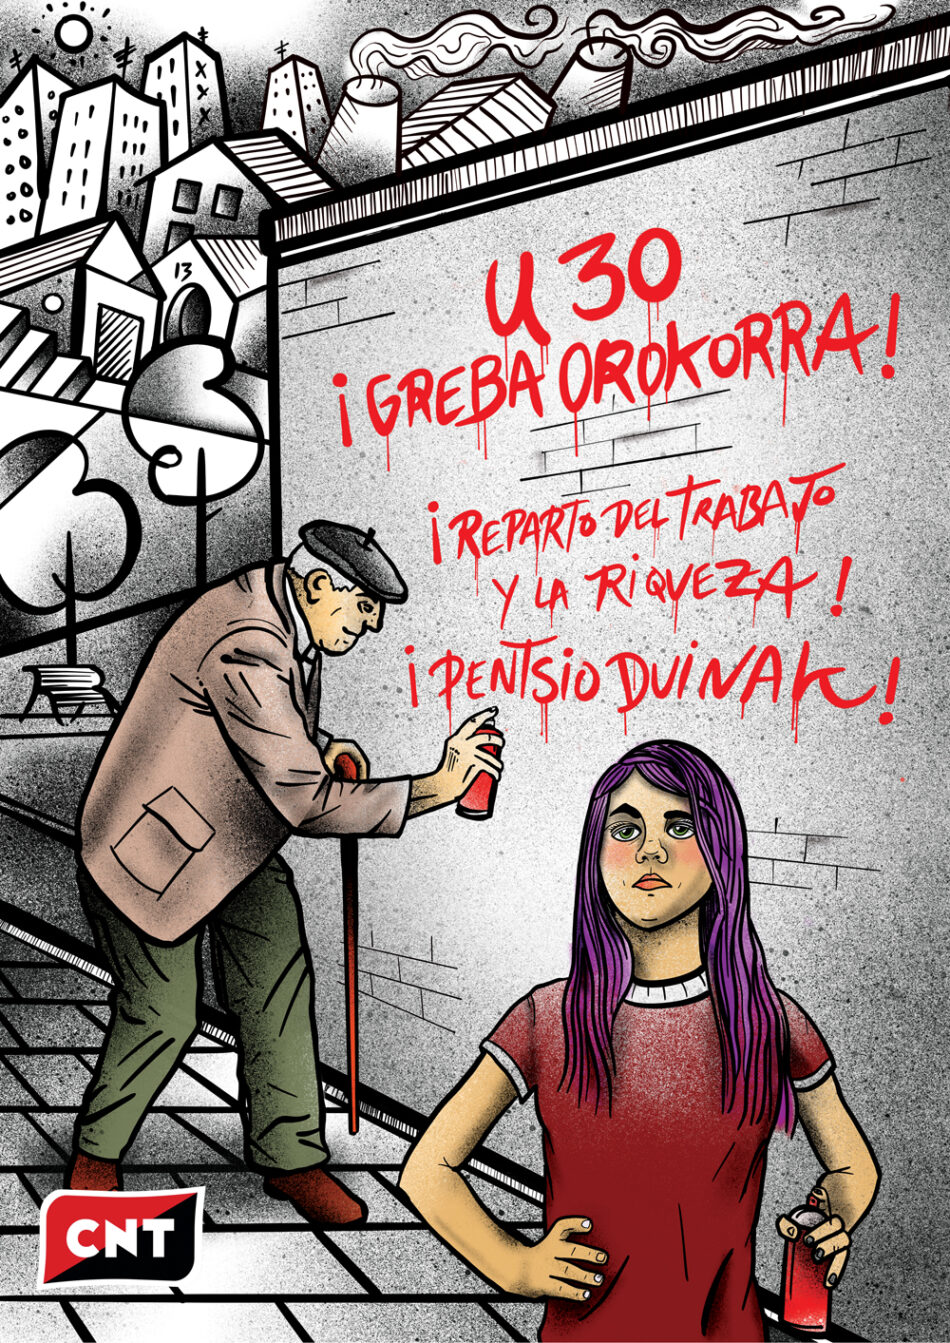 CNT: «Ante las mentiras, solo queda hacer huelga general este 30E»